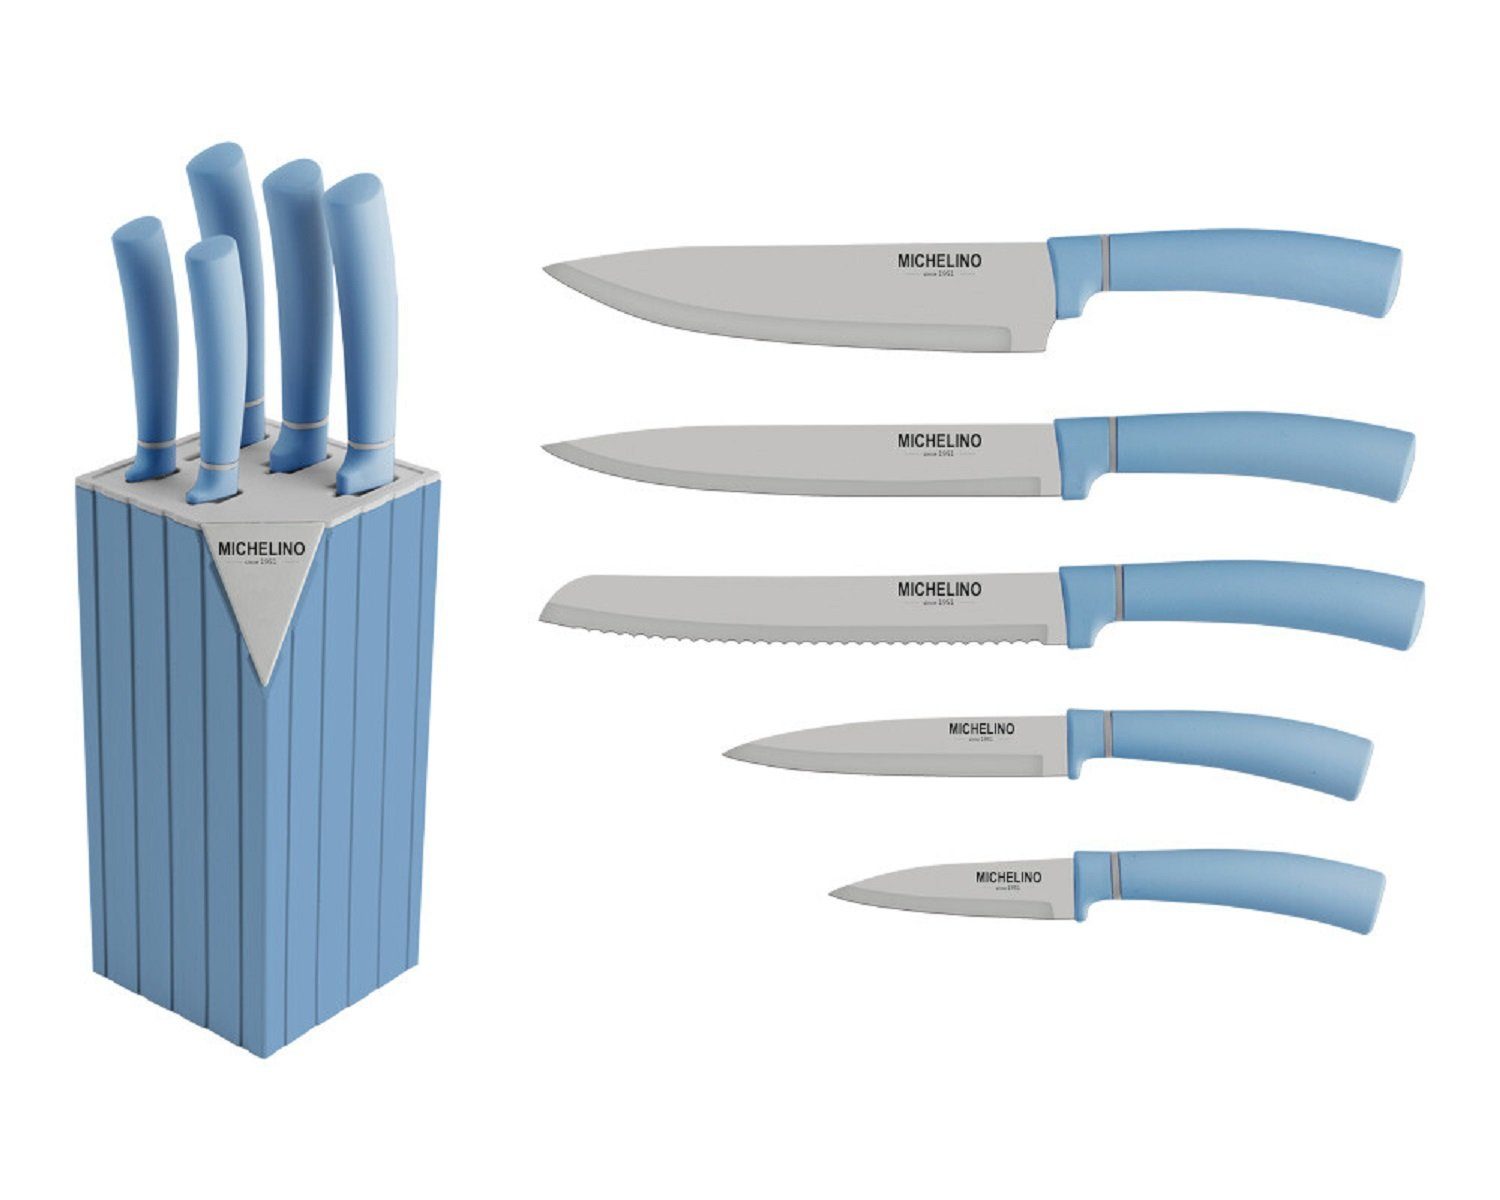 Messer Serie Klingen Messerblock Messer-Set Michelino Küchenmesser Blau 6-tlg. Alythia